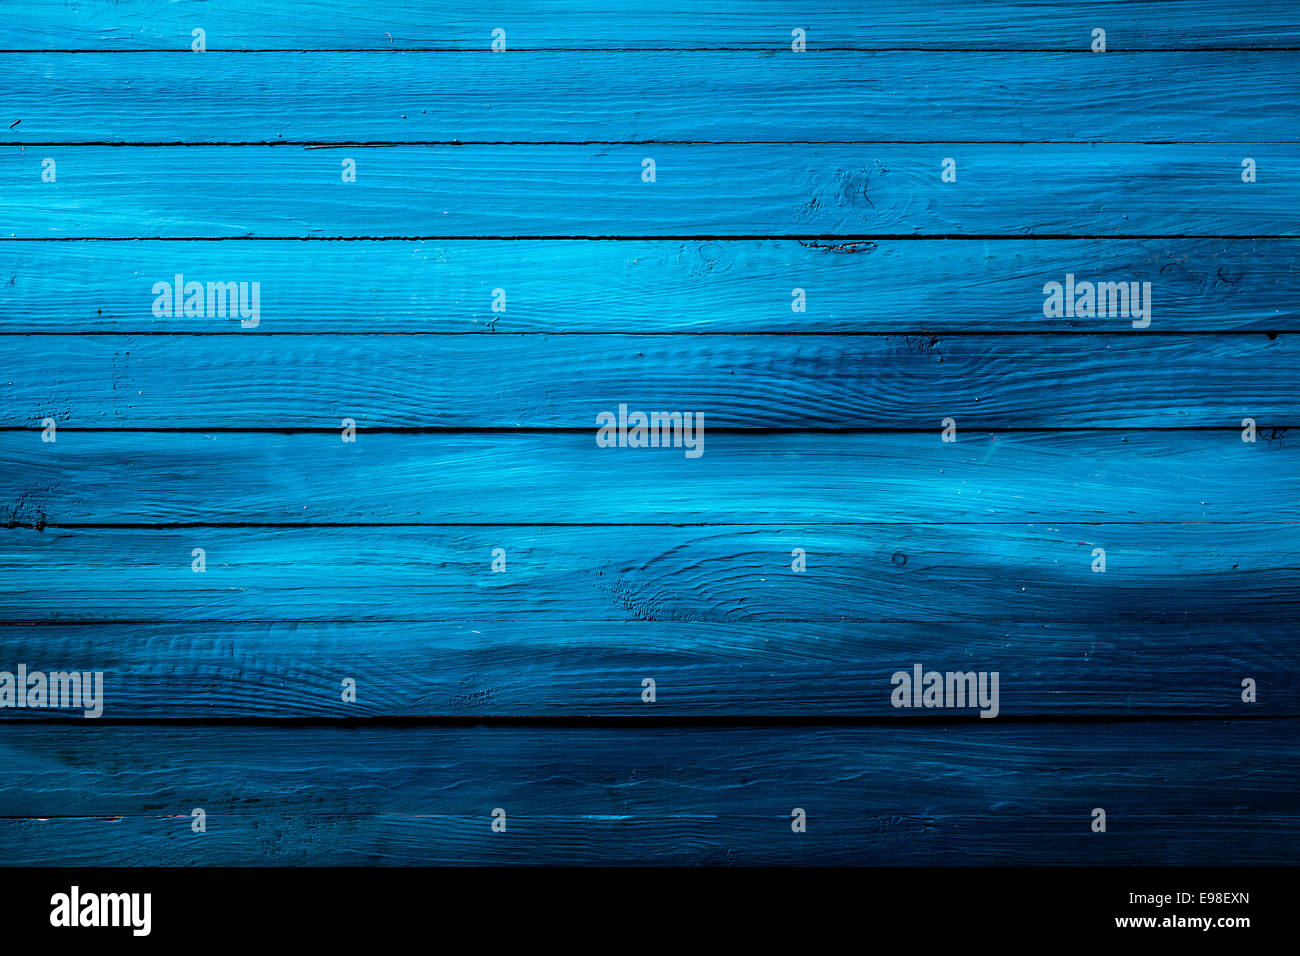 Colorata ricca in legno di colore blu texture di sfondo con un colore graduuated e schede in parallelo con un modello di grana di legno, formato quadrato immagine Foto Stock